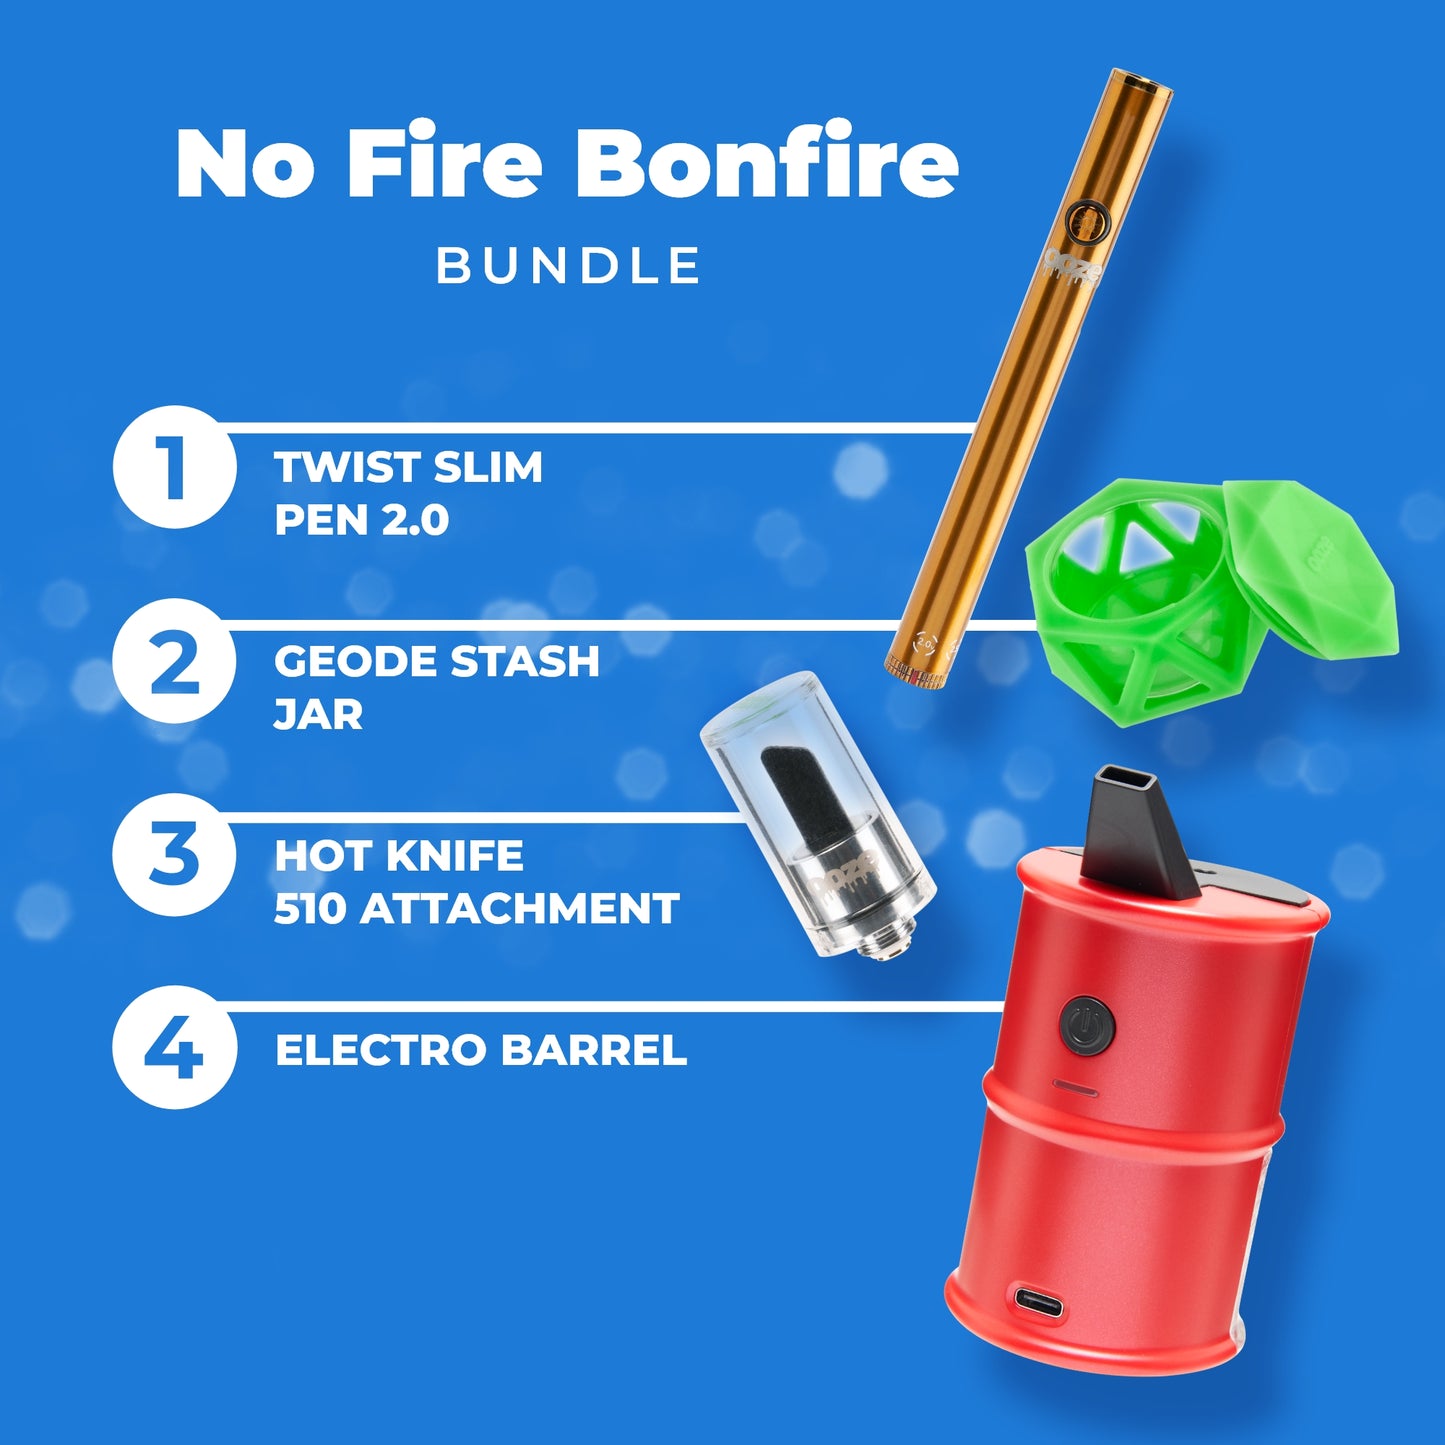 No Fire Bonfire Bundle